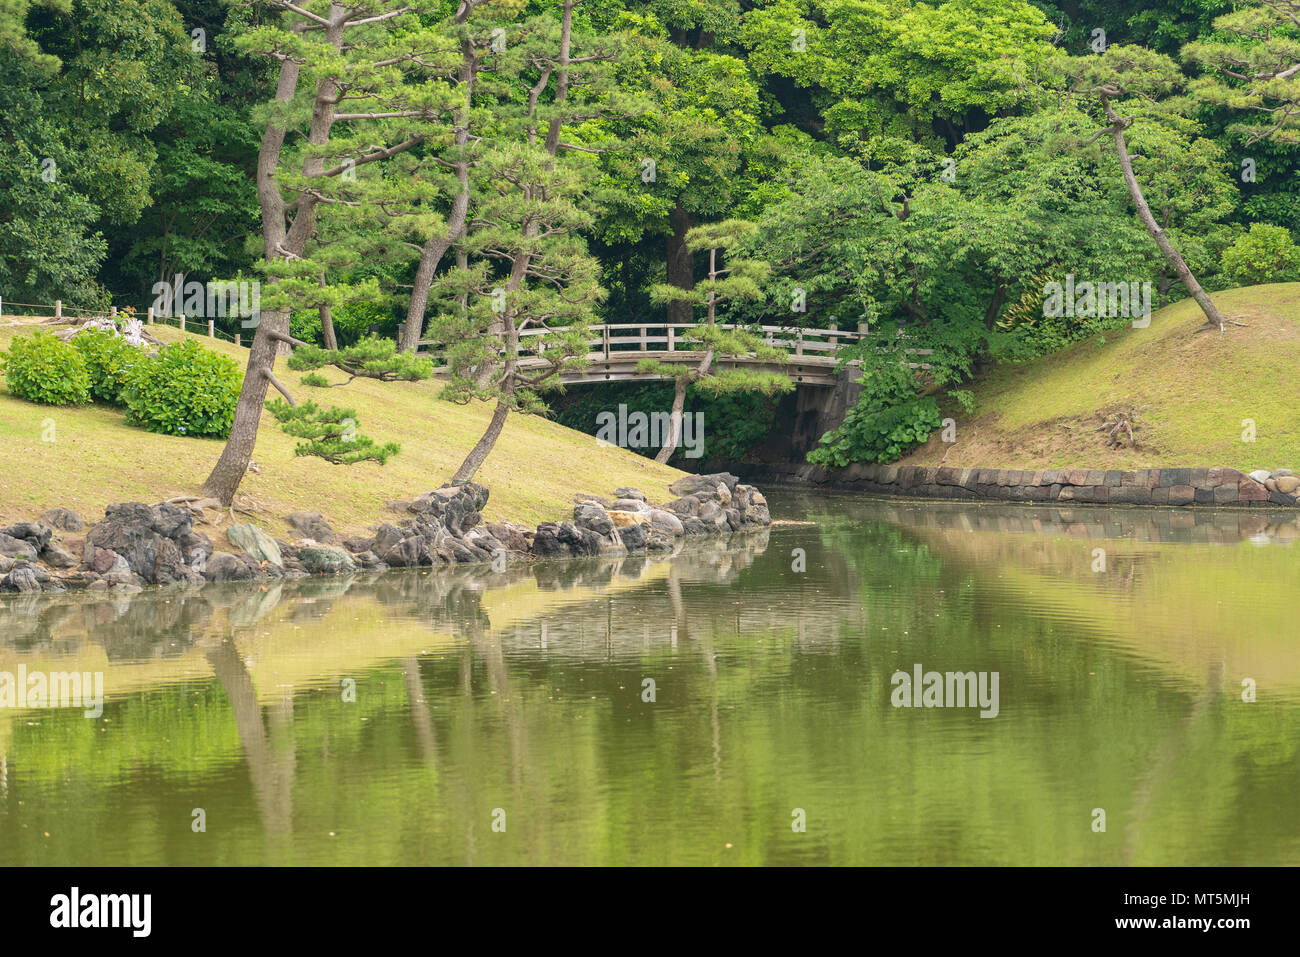 Hamarikyu Gärten in Tokio sind ein beliebter Ort für Touristen und Einheimische. Dieser Park hat Teichen, Brücken und ein japanisches Teehaus in ihrer Begründung. Stockfoto